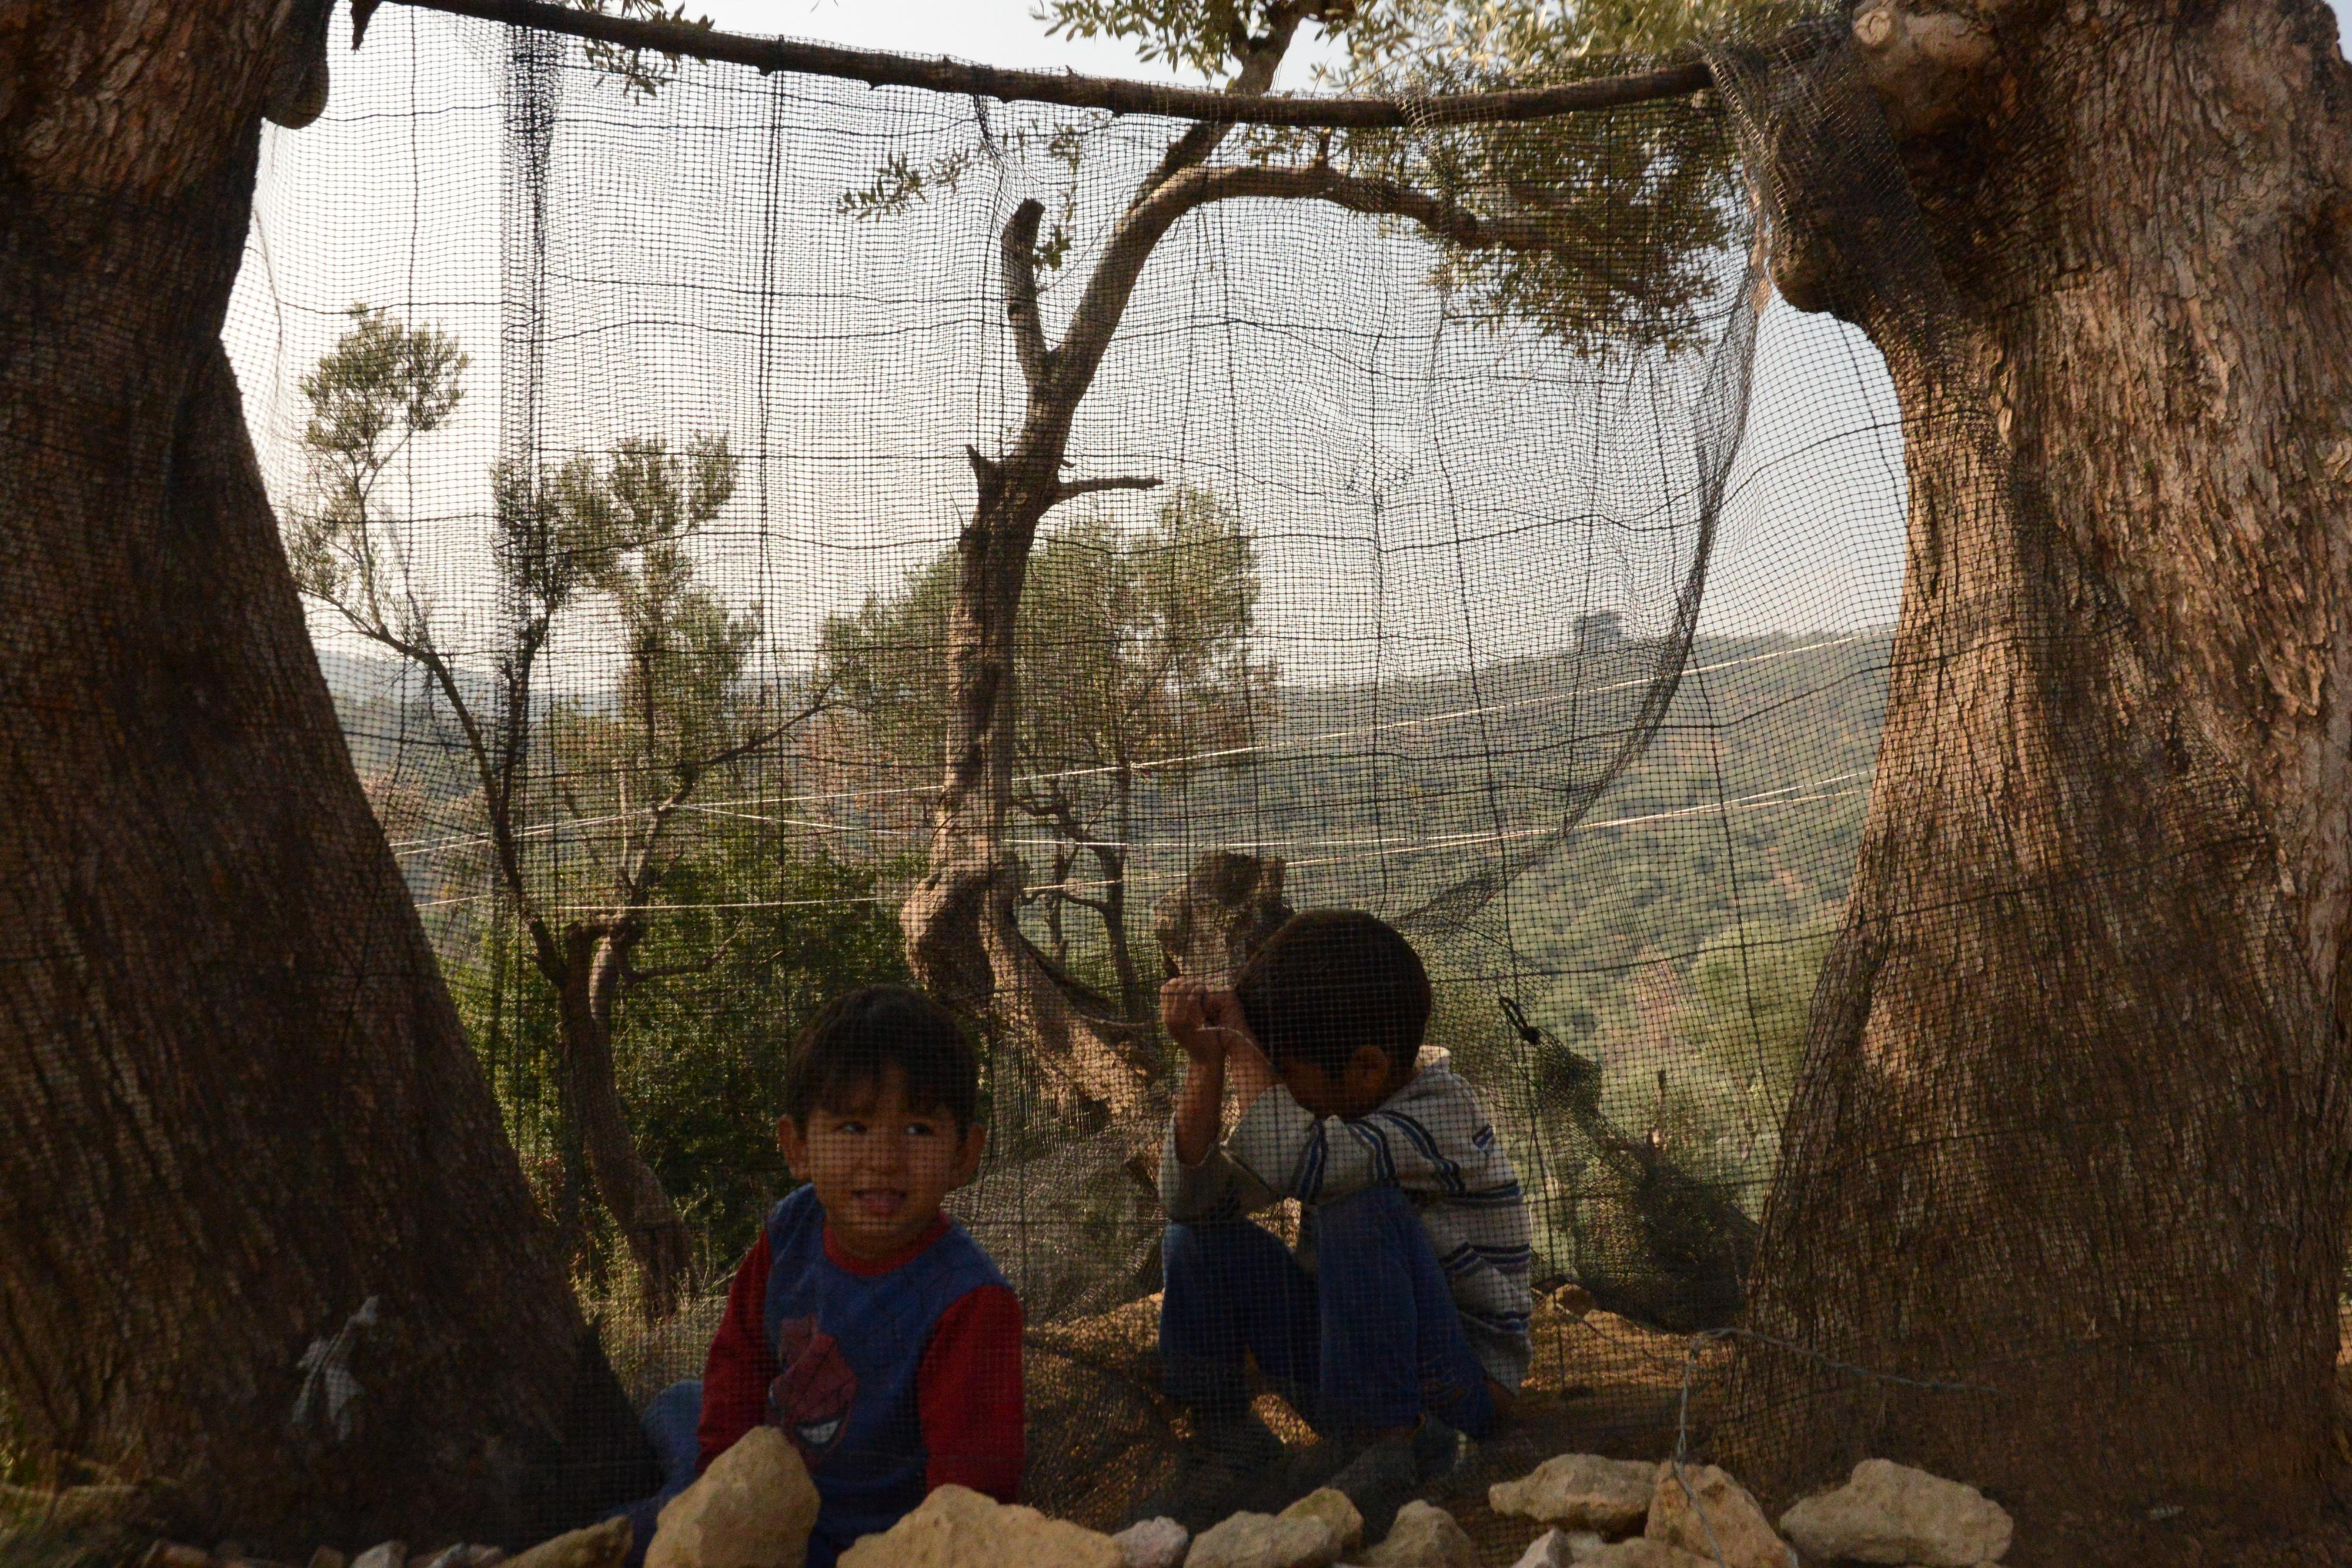 Les enfants du camp de Moria, sur l'île grecque de Lesbos, s'amusent avec ce qu'ils trouvent à proximité. [RTS - Angélique Kourounis]